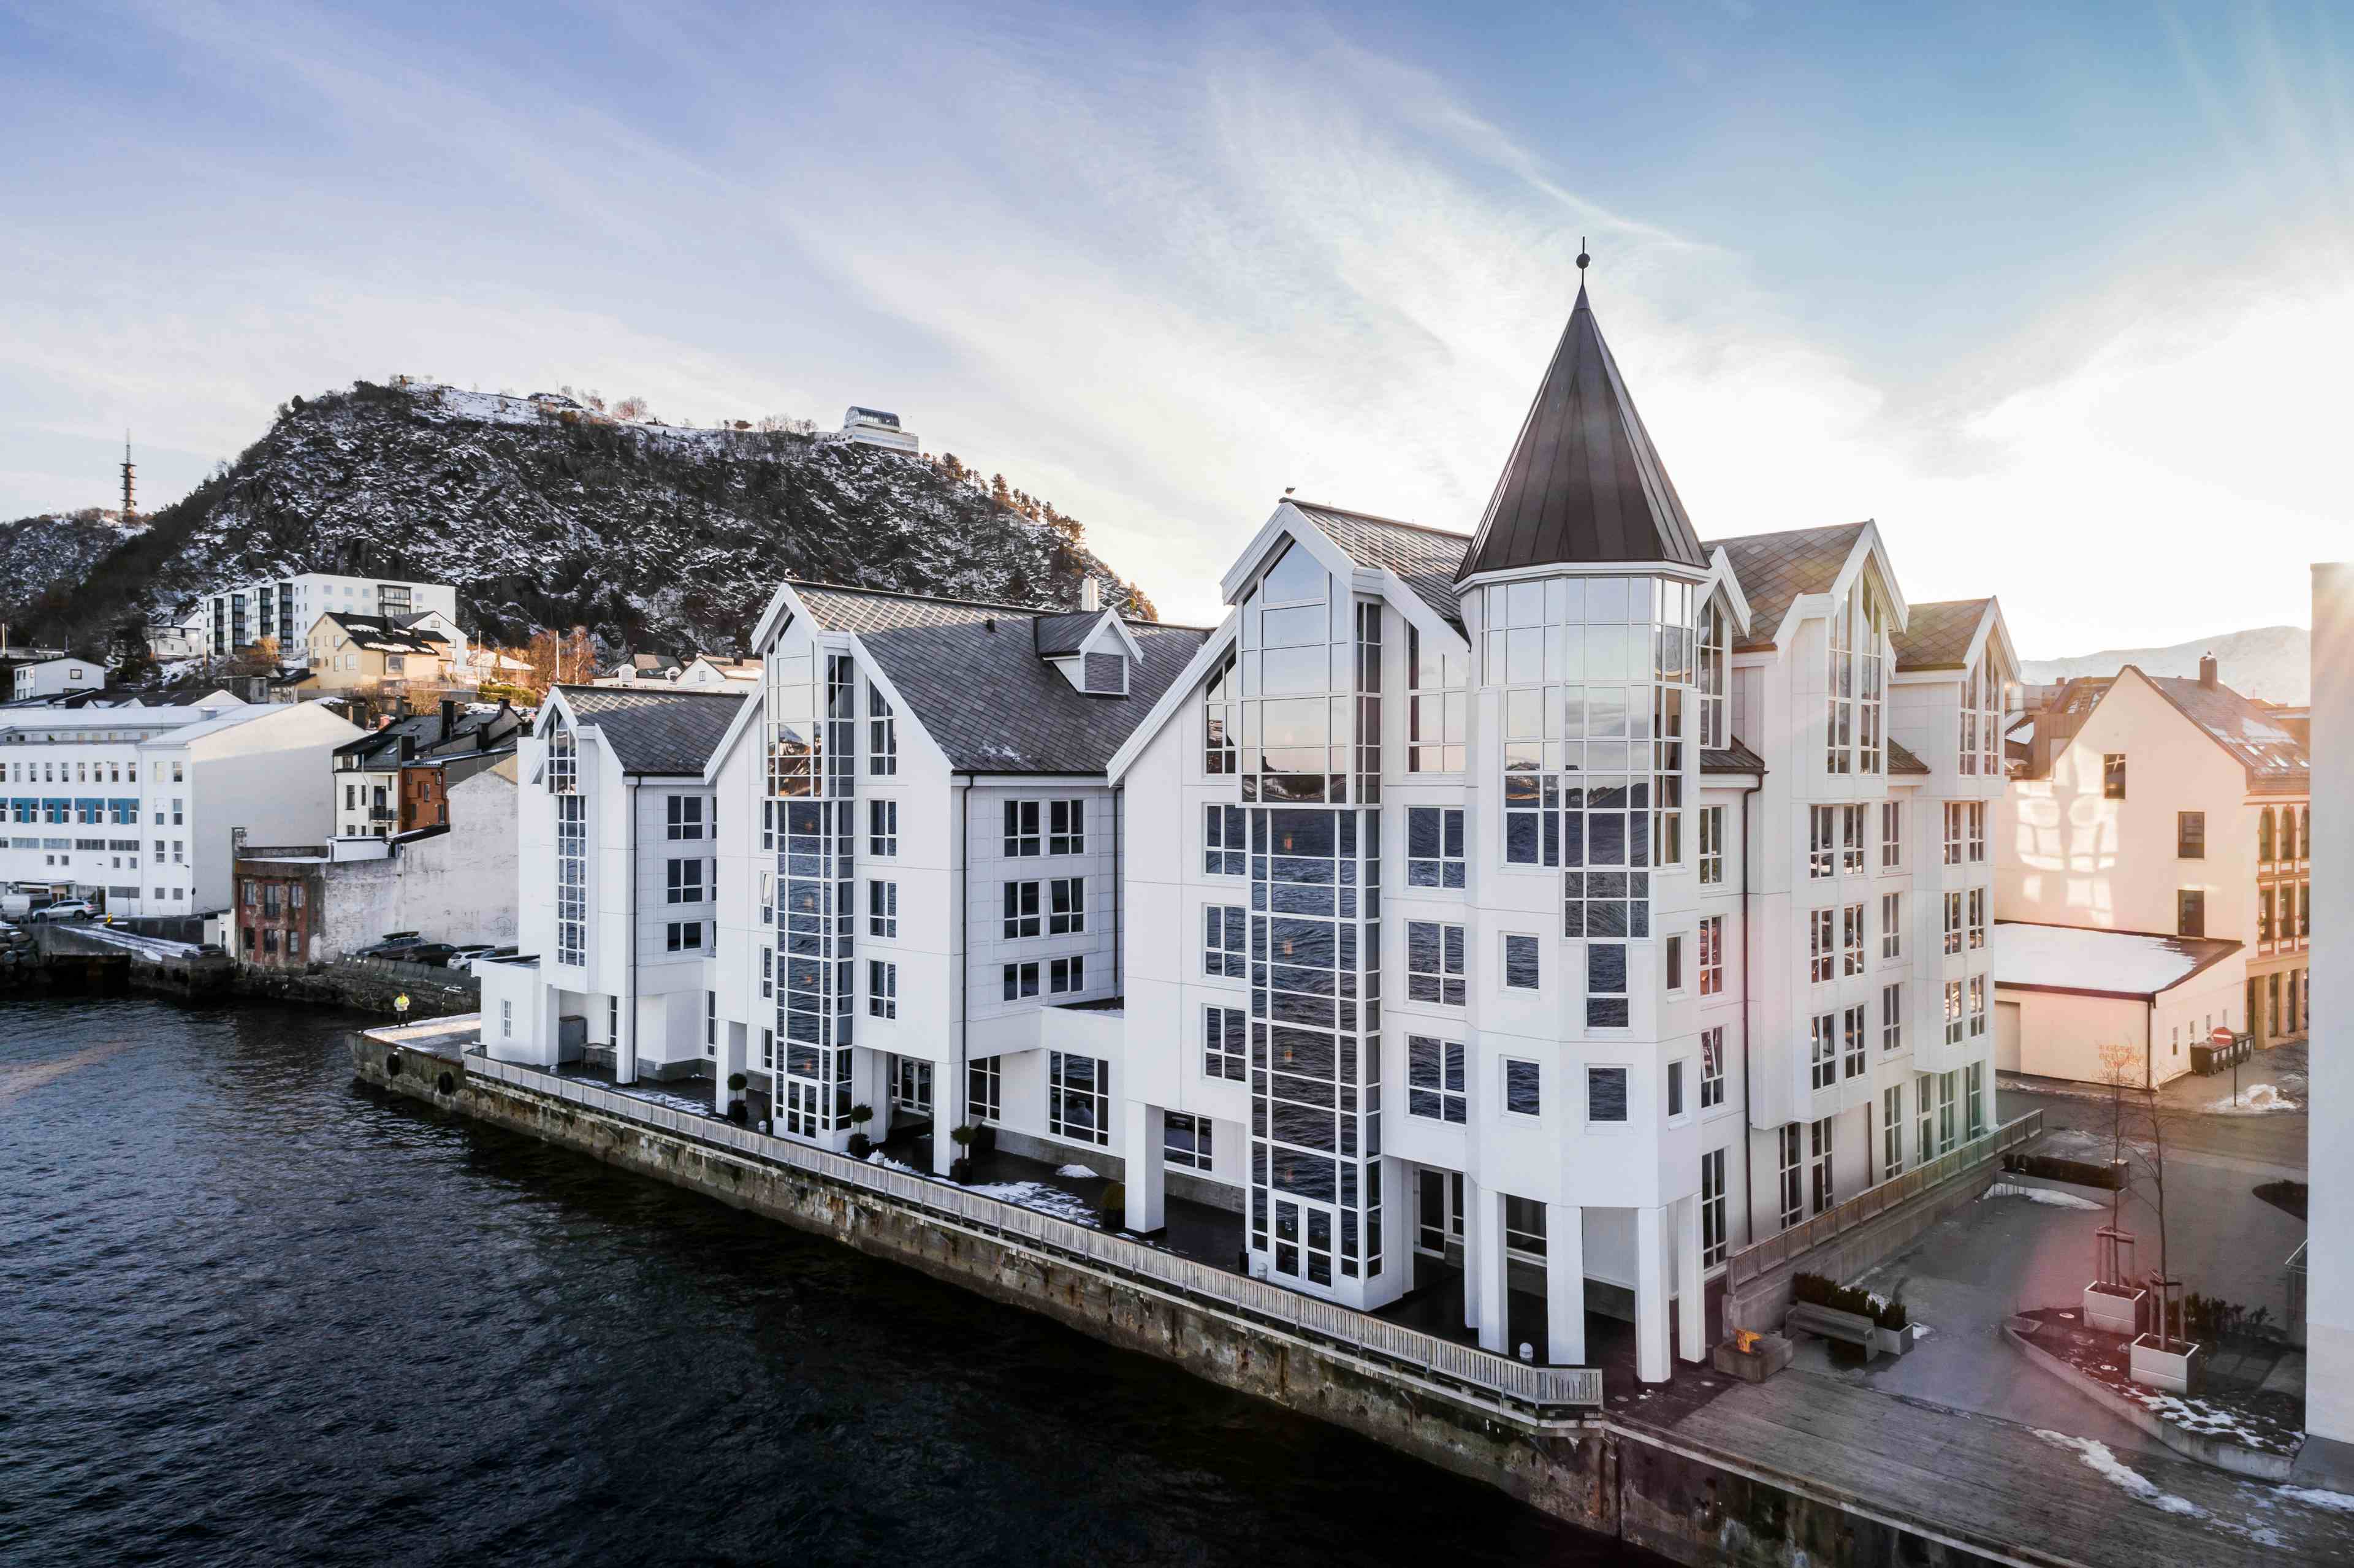 Hotell med spir og mange vindu rett ved sjøen i Ålesund.